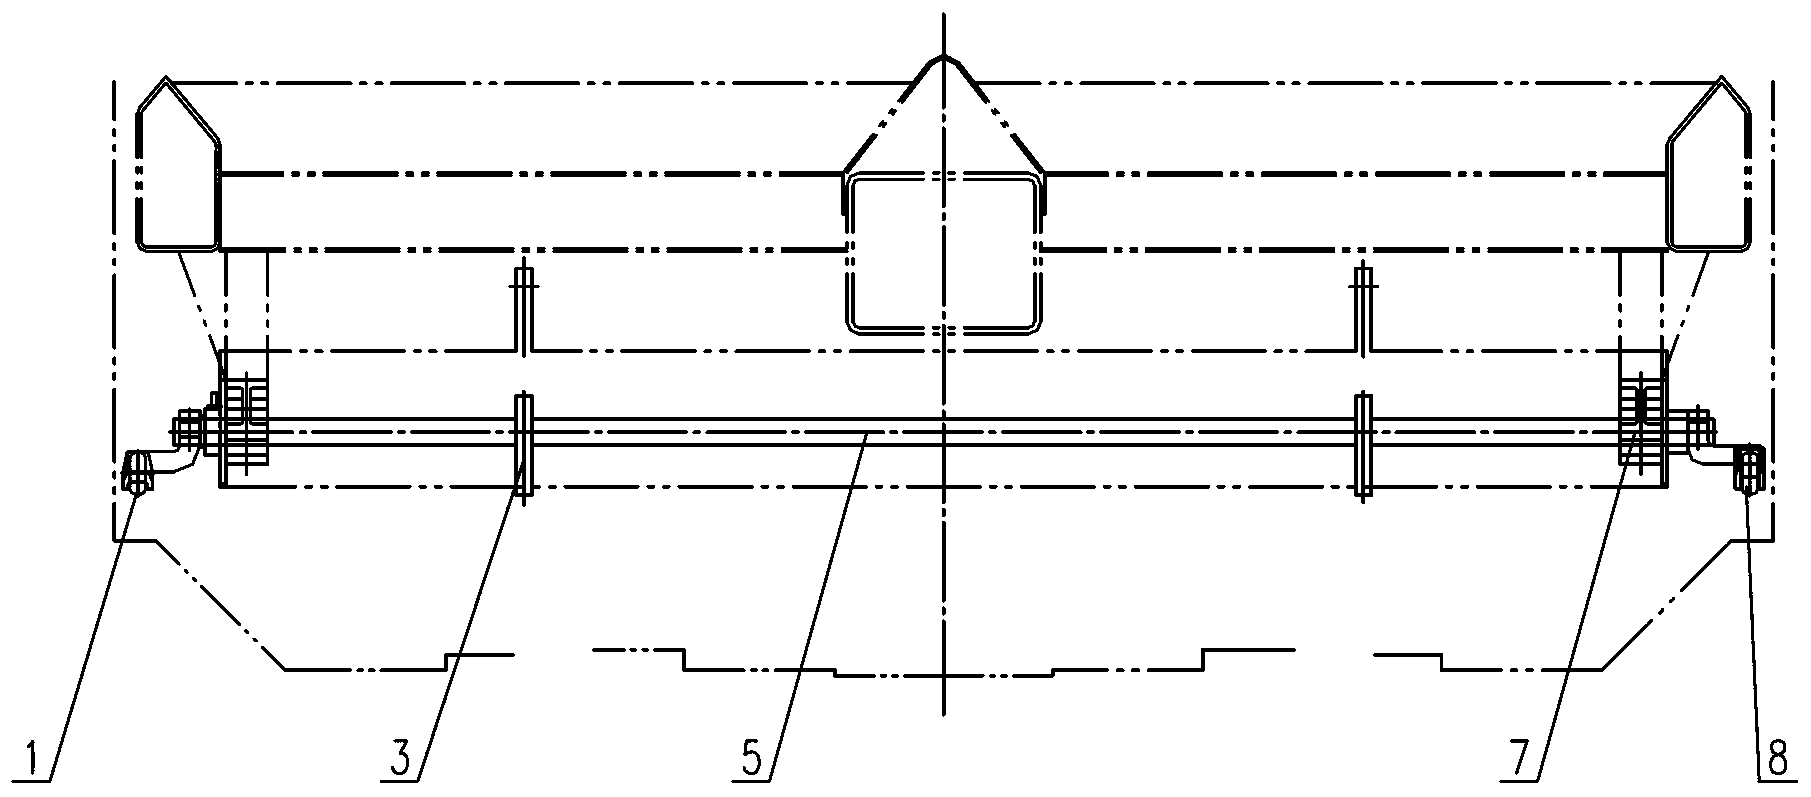 Bottom door opening-closing mechanism for railway funnel type goods vehicle